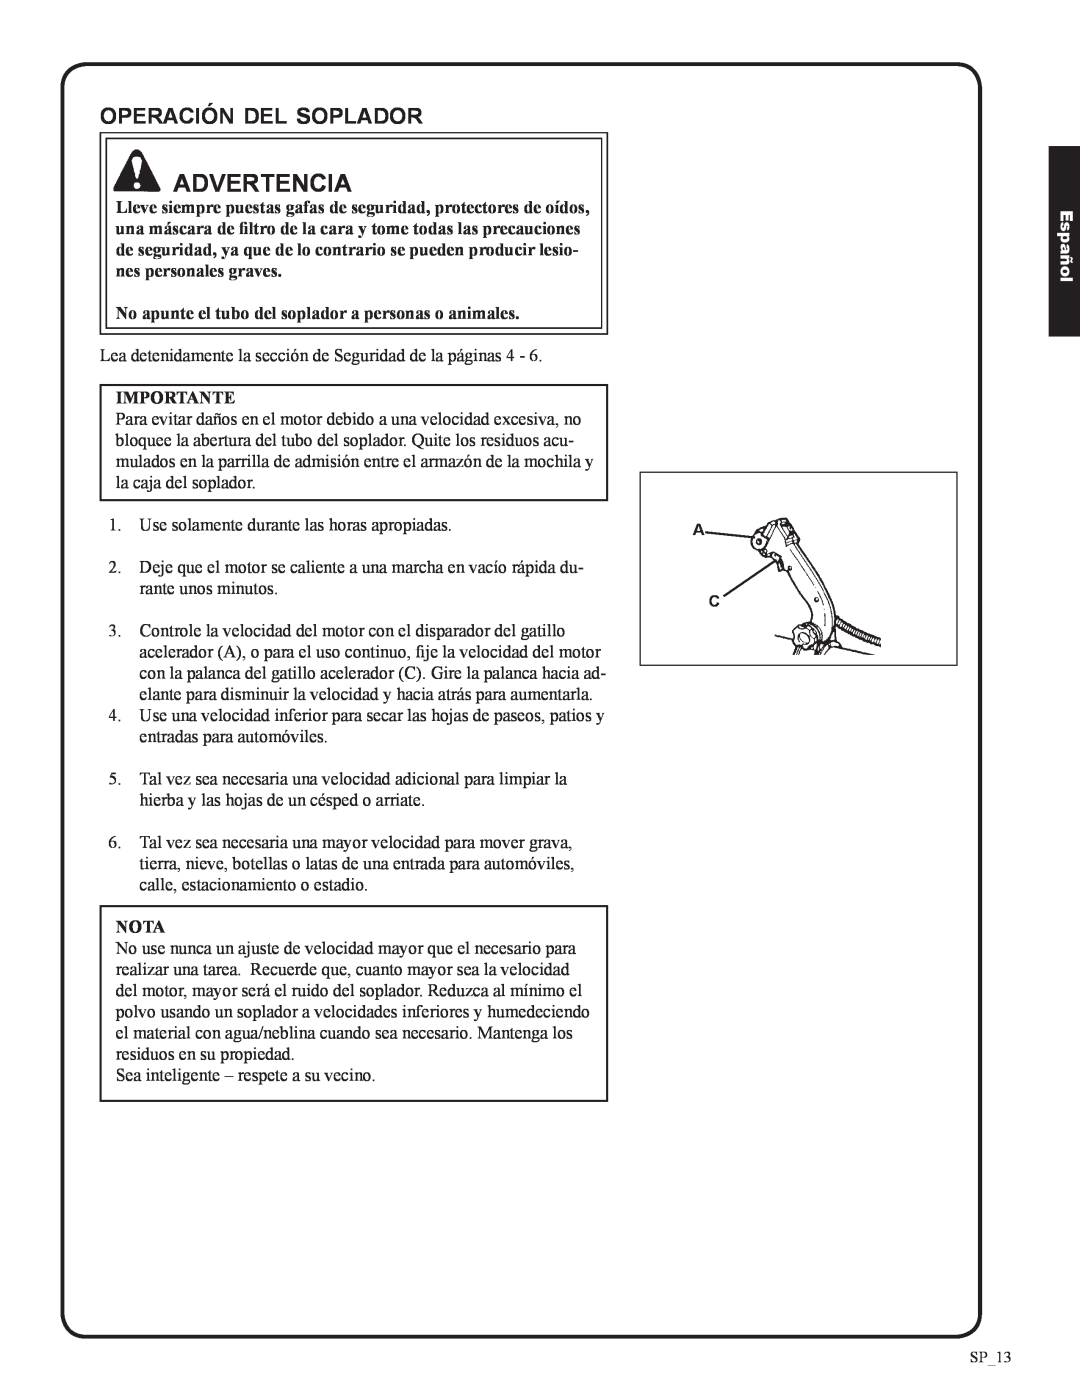 Shindaiwa 82050, EB633RT manual operación del soplador, Advertencia, Importante, Nota, Español 